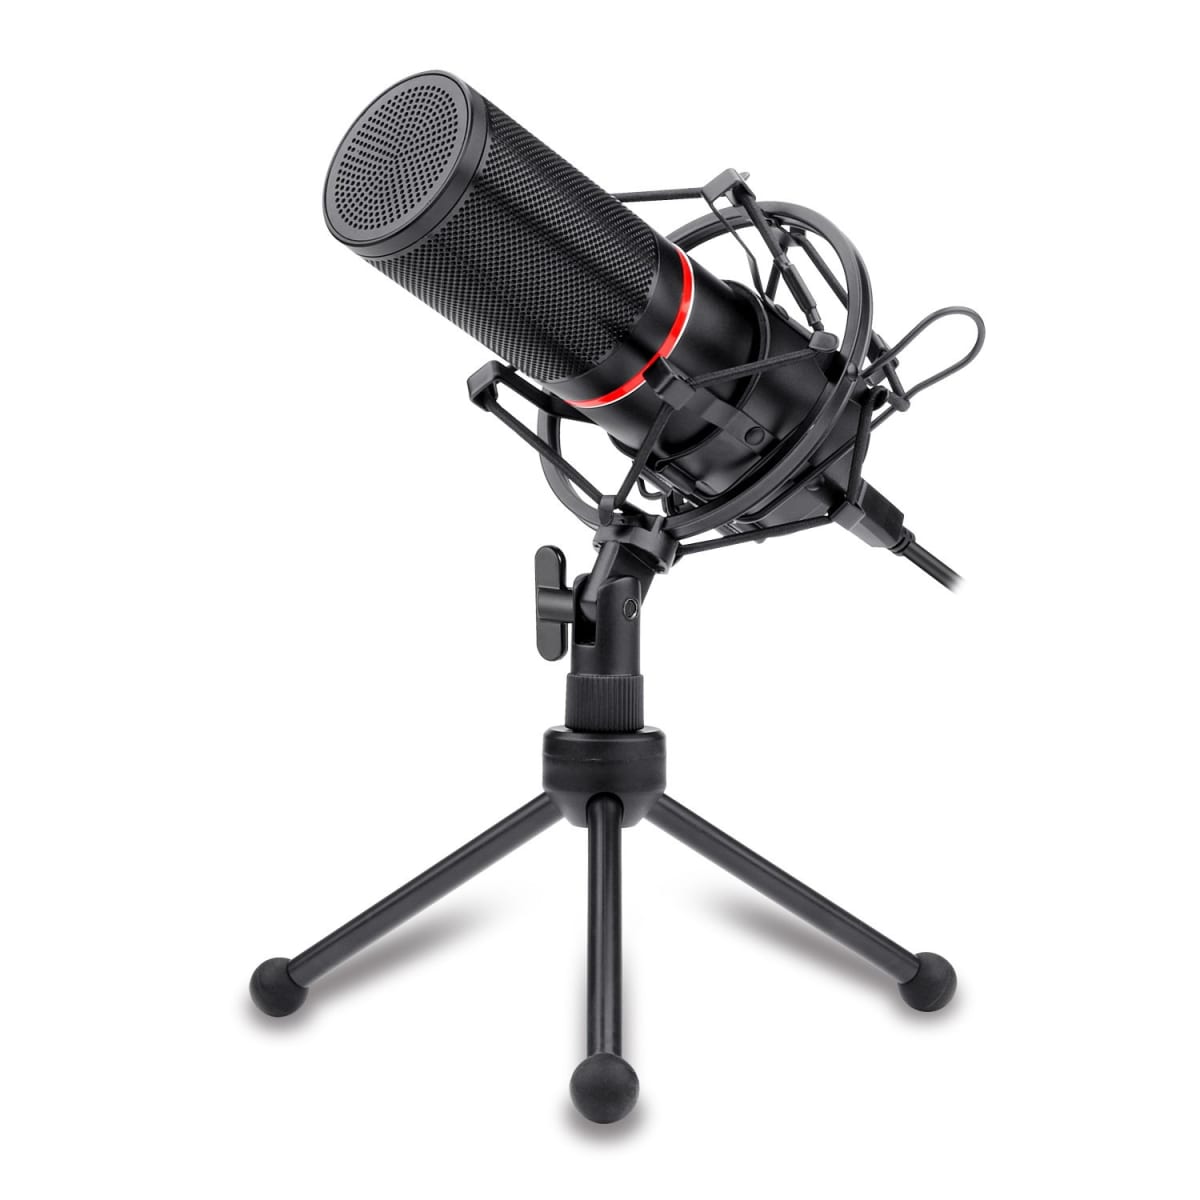 Redragon Blazar GN300 Microfono Optimizado para Streaming - Condensador Cardioide 16mm - Anillo Indicador LED Rojo - Tripode Articulado - Cable de 1.70m